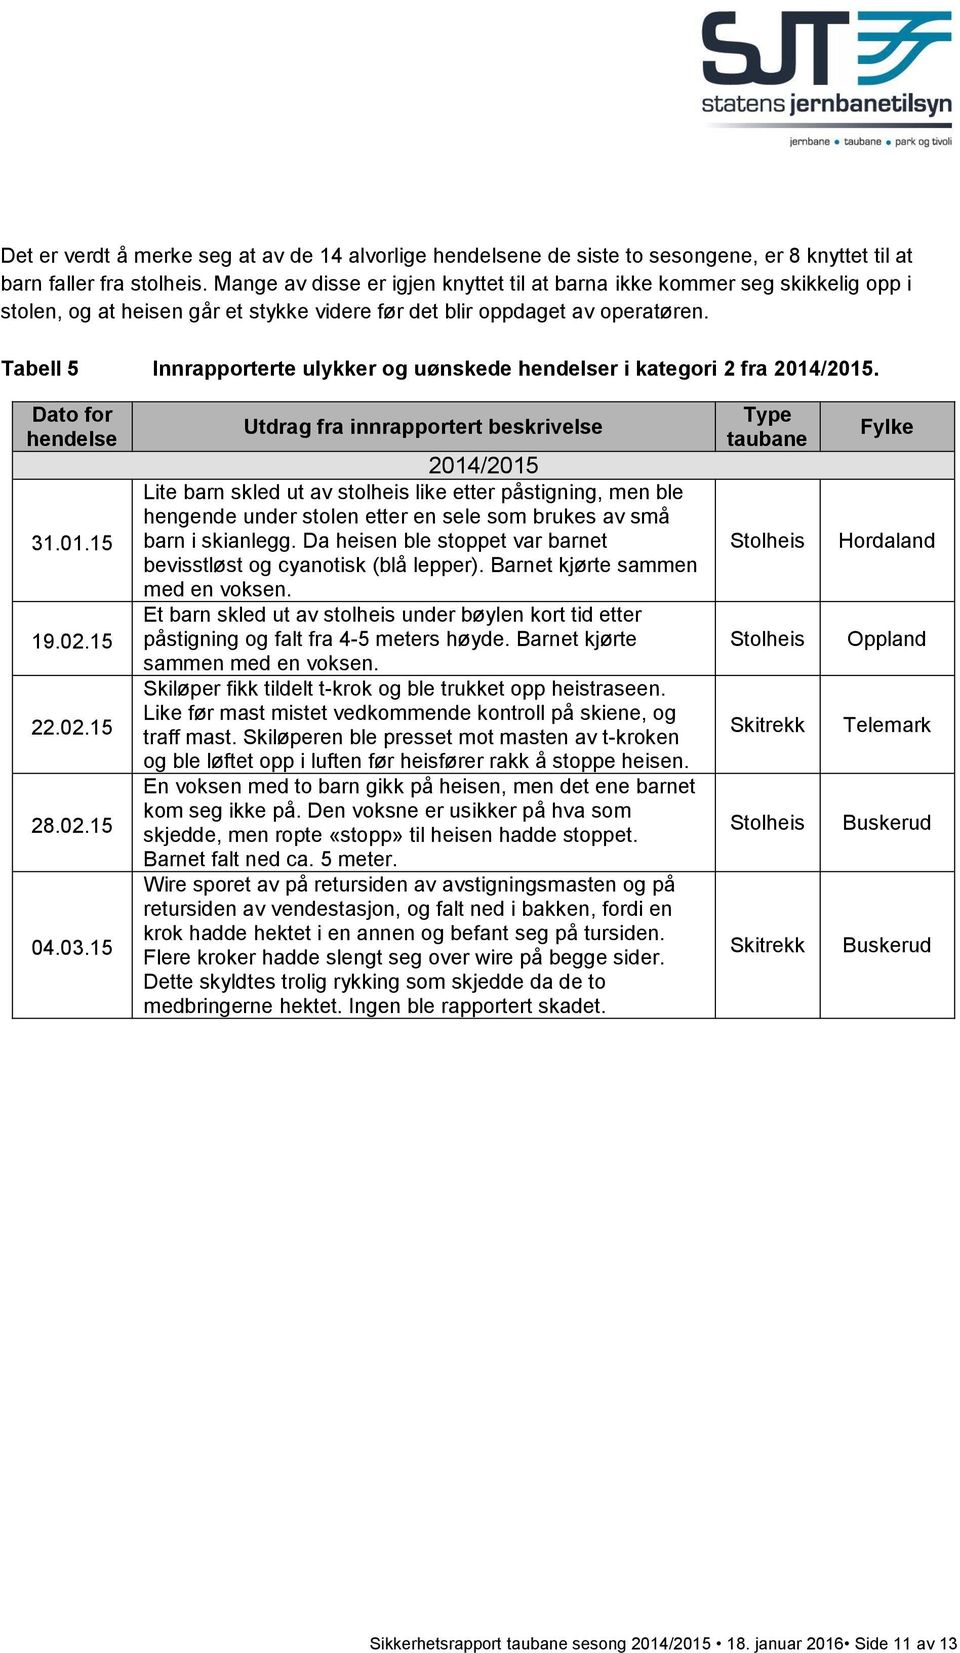 Tabell 5 Innrapporterte ulykker og uønskede hendelser i kategori 2 fra 2014/2015. Dato for hendelse 31.01.15 19.02.15 22.02.15 28.02.15 04.03.